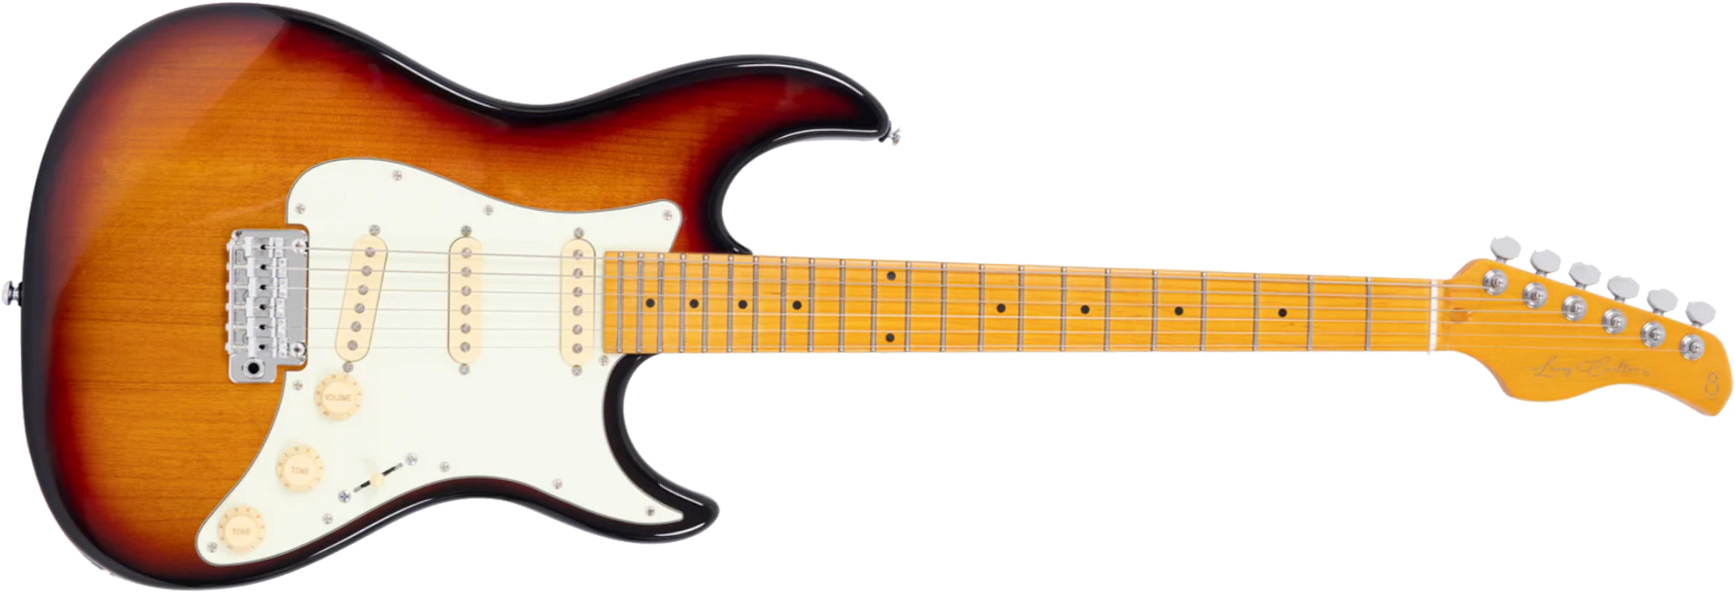 Sire Larry Carlton S5 3s Trem Mn - 3-tone Sunburst - Elektrische gitaar in Str-vorm - Main picture